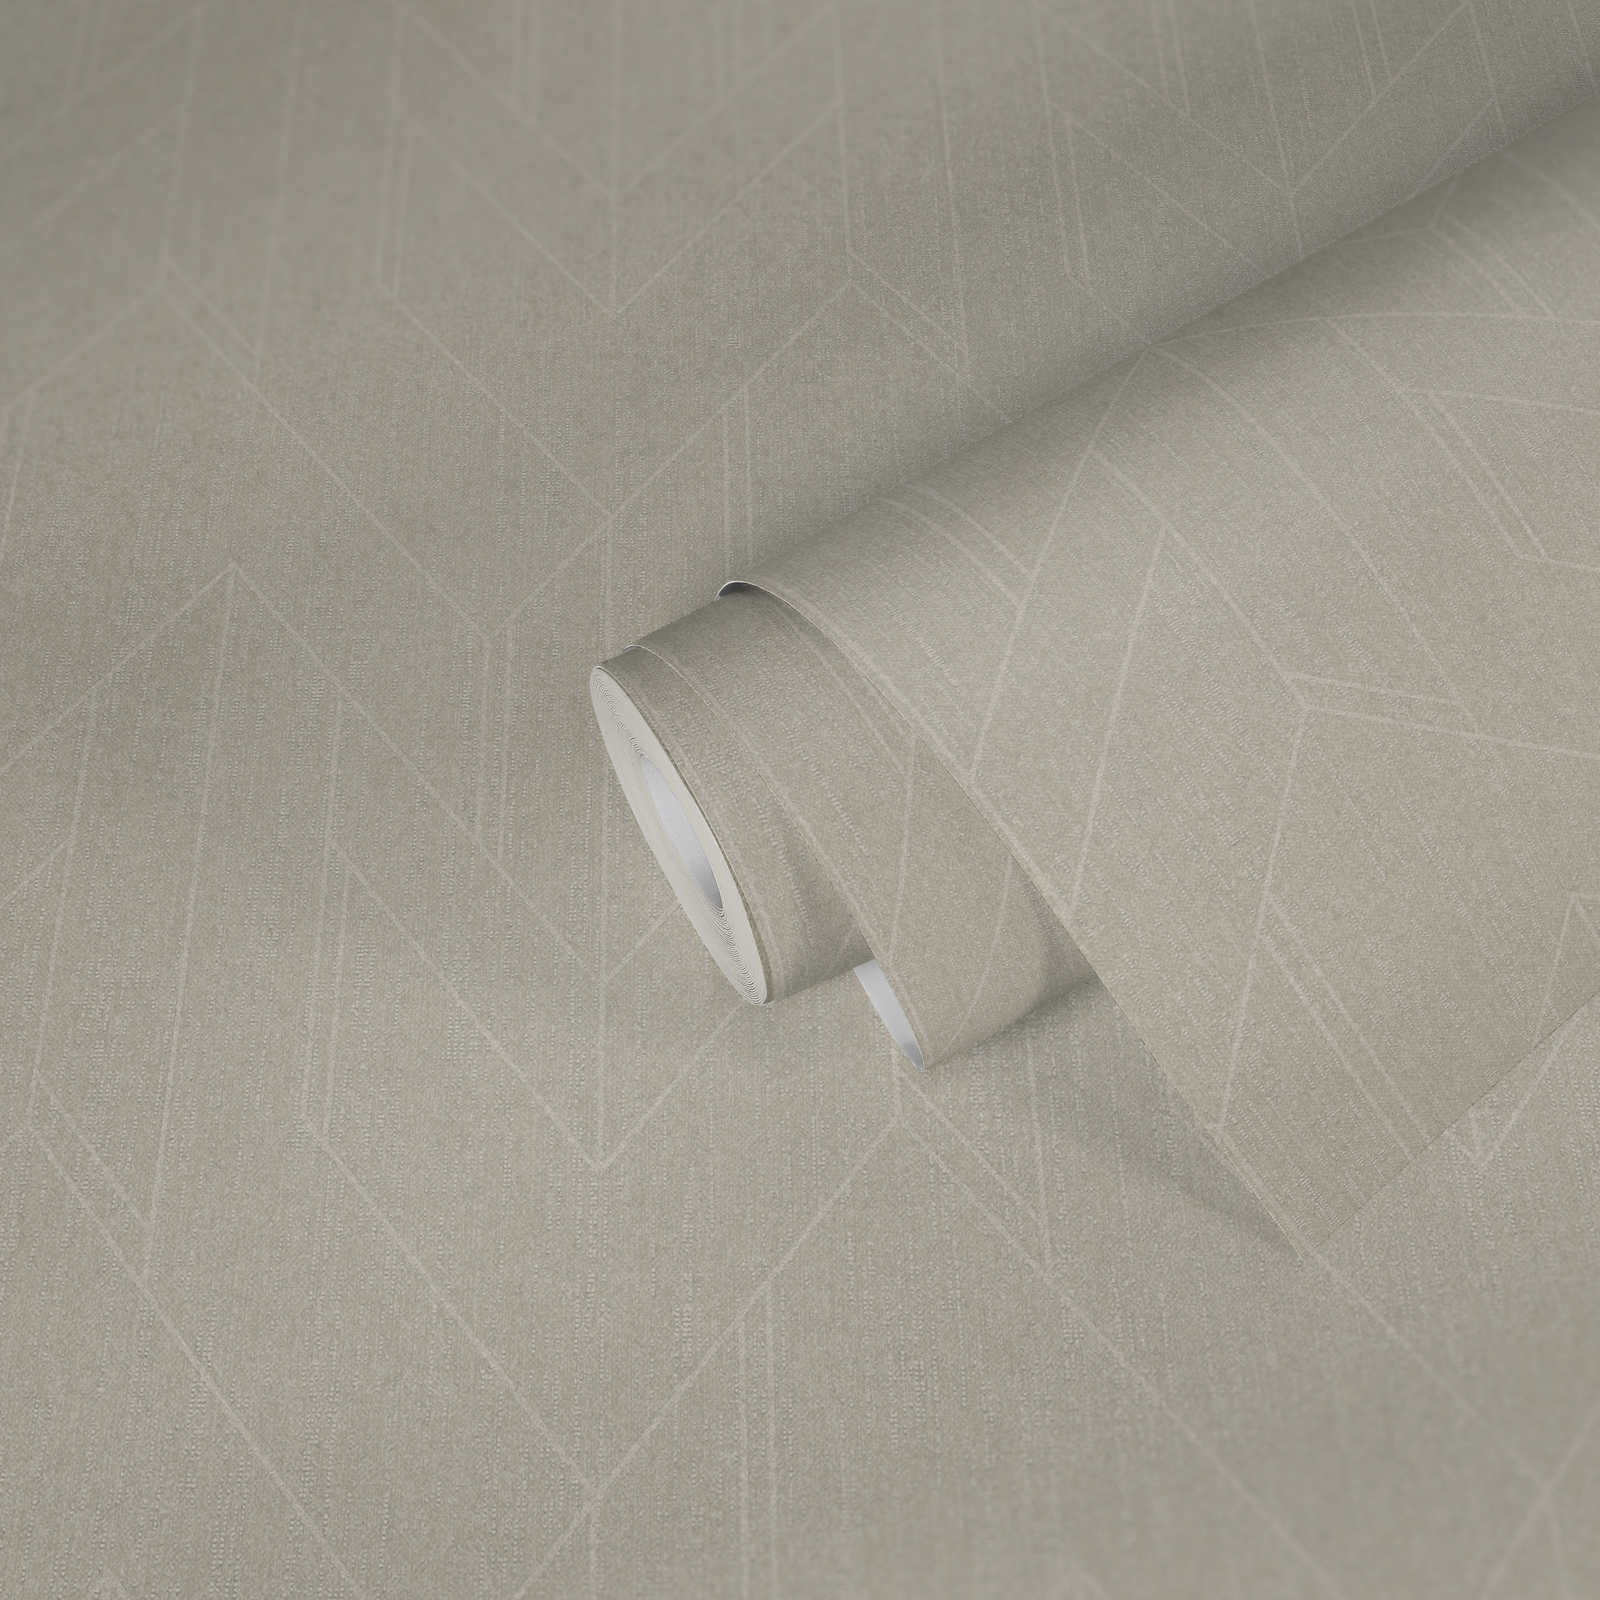             Papier peint gris clair aspect textile avec motif brillant de style rétro - Gris
        